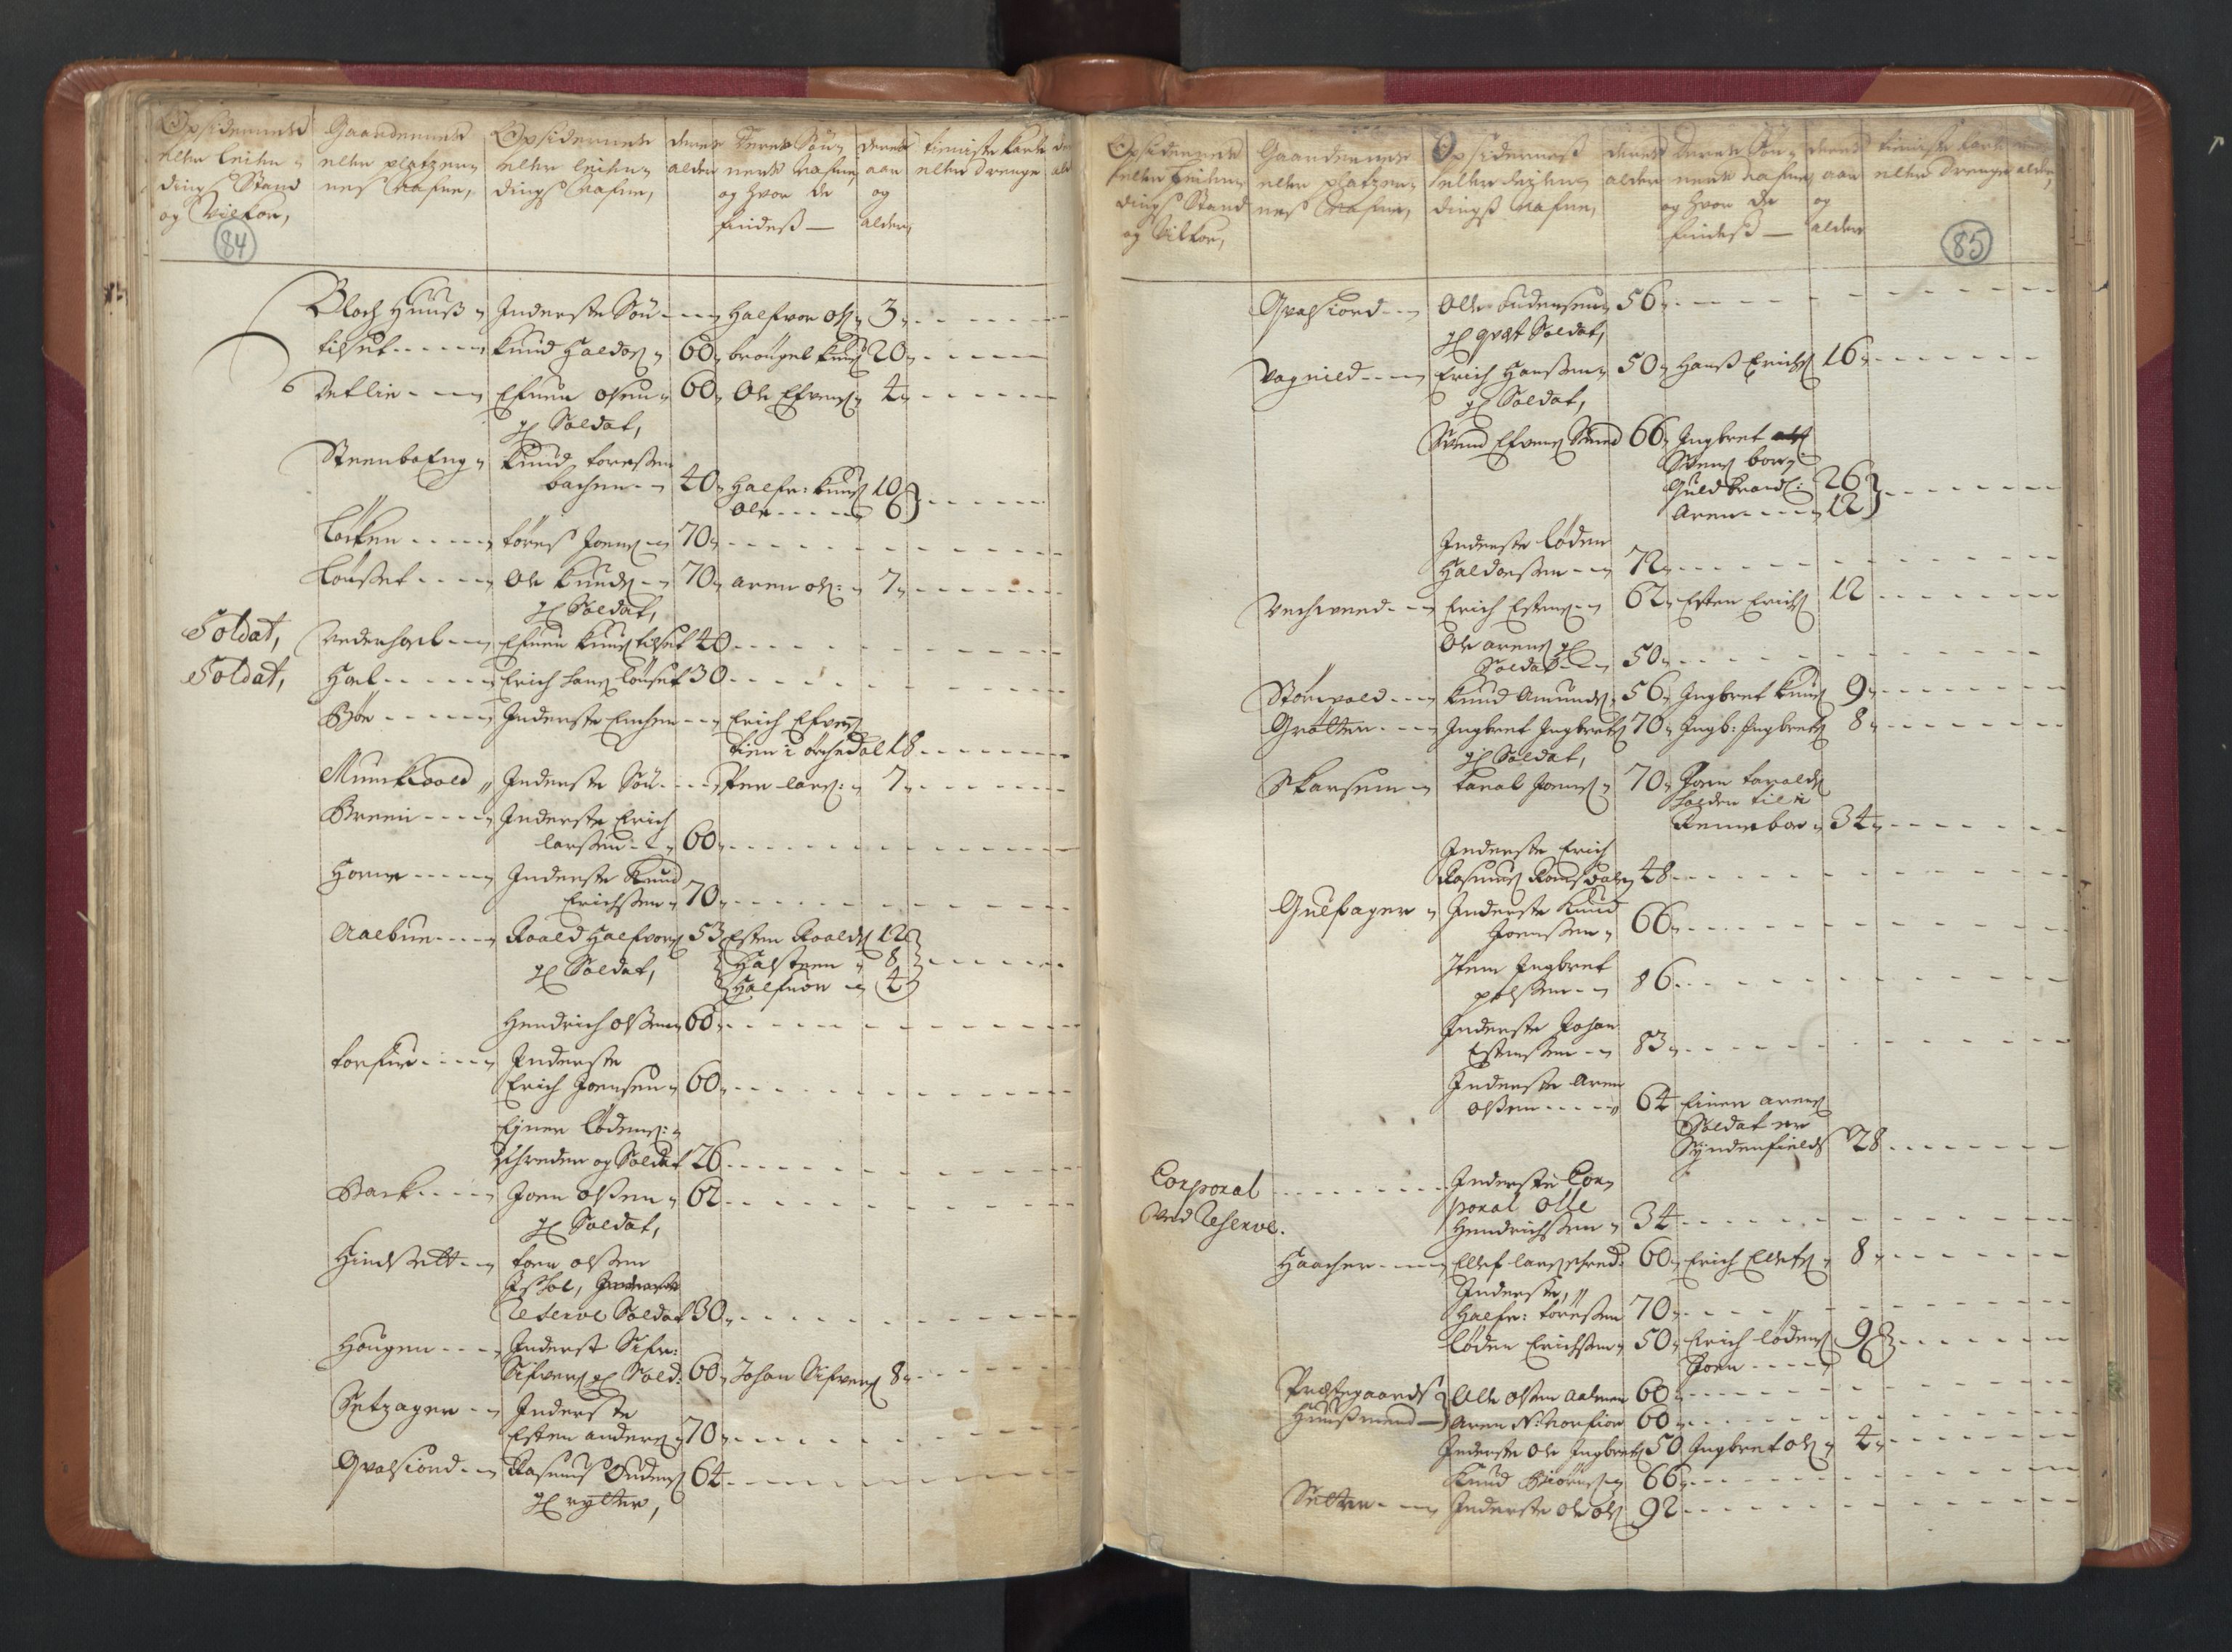 RA, Manntallet 1701, nr. 13: Orkdal fogderi og Gauldal fogderi med Røros kobberverk, 1701, s. 84-85